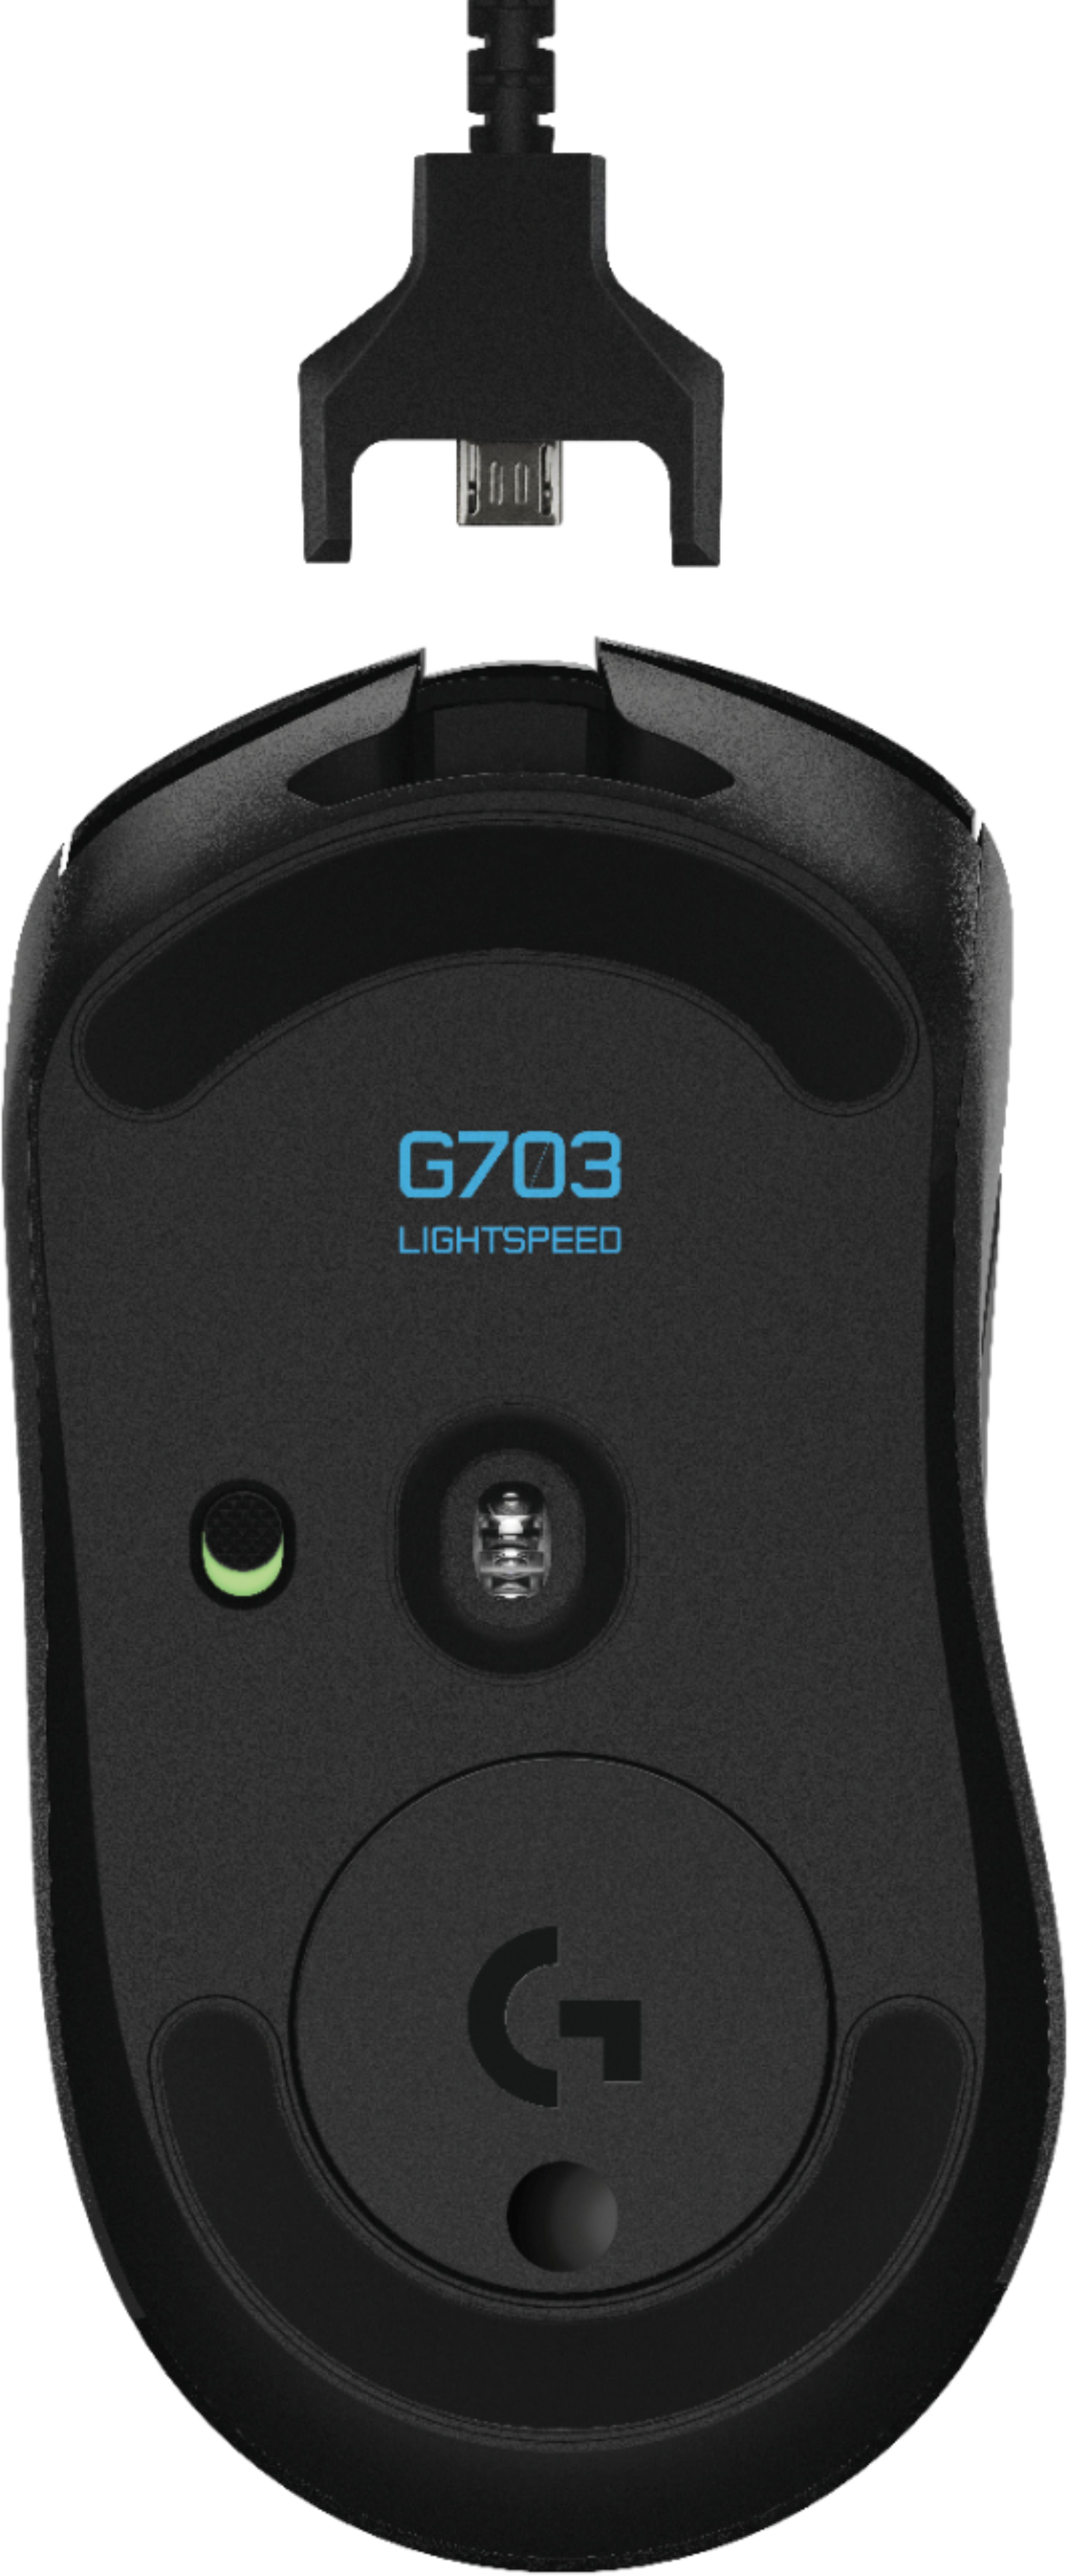 Logitech G703 Lightspeed Mouse Wireless